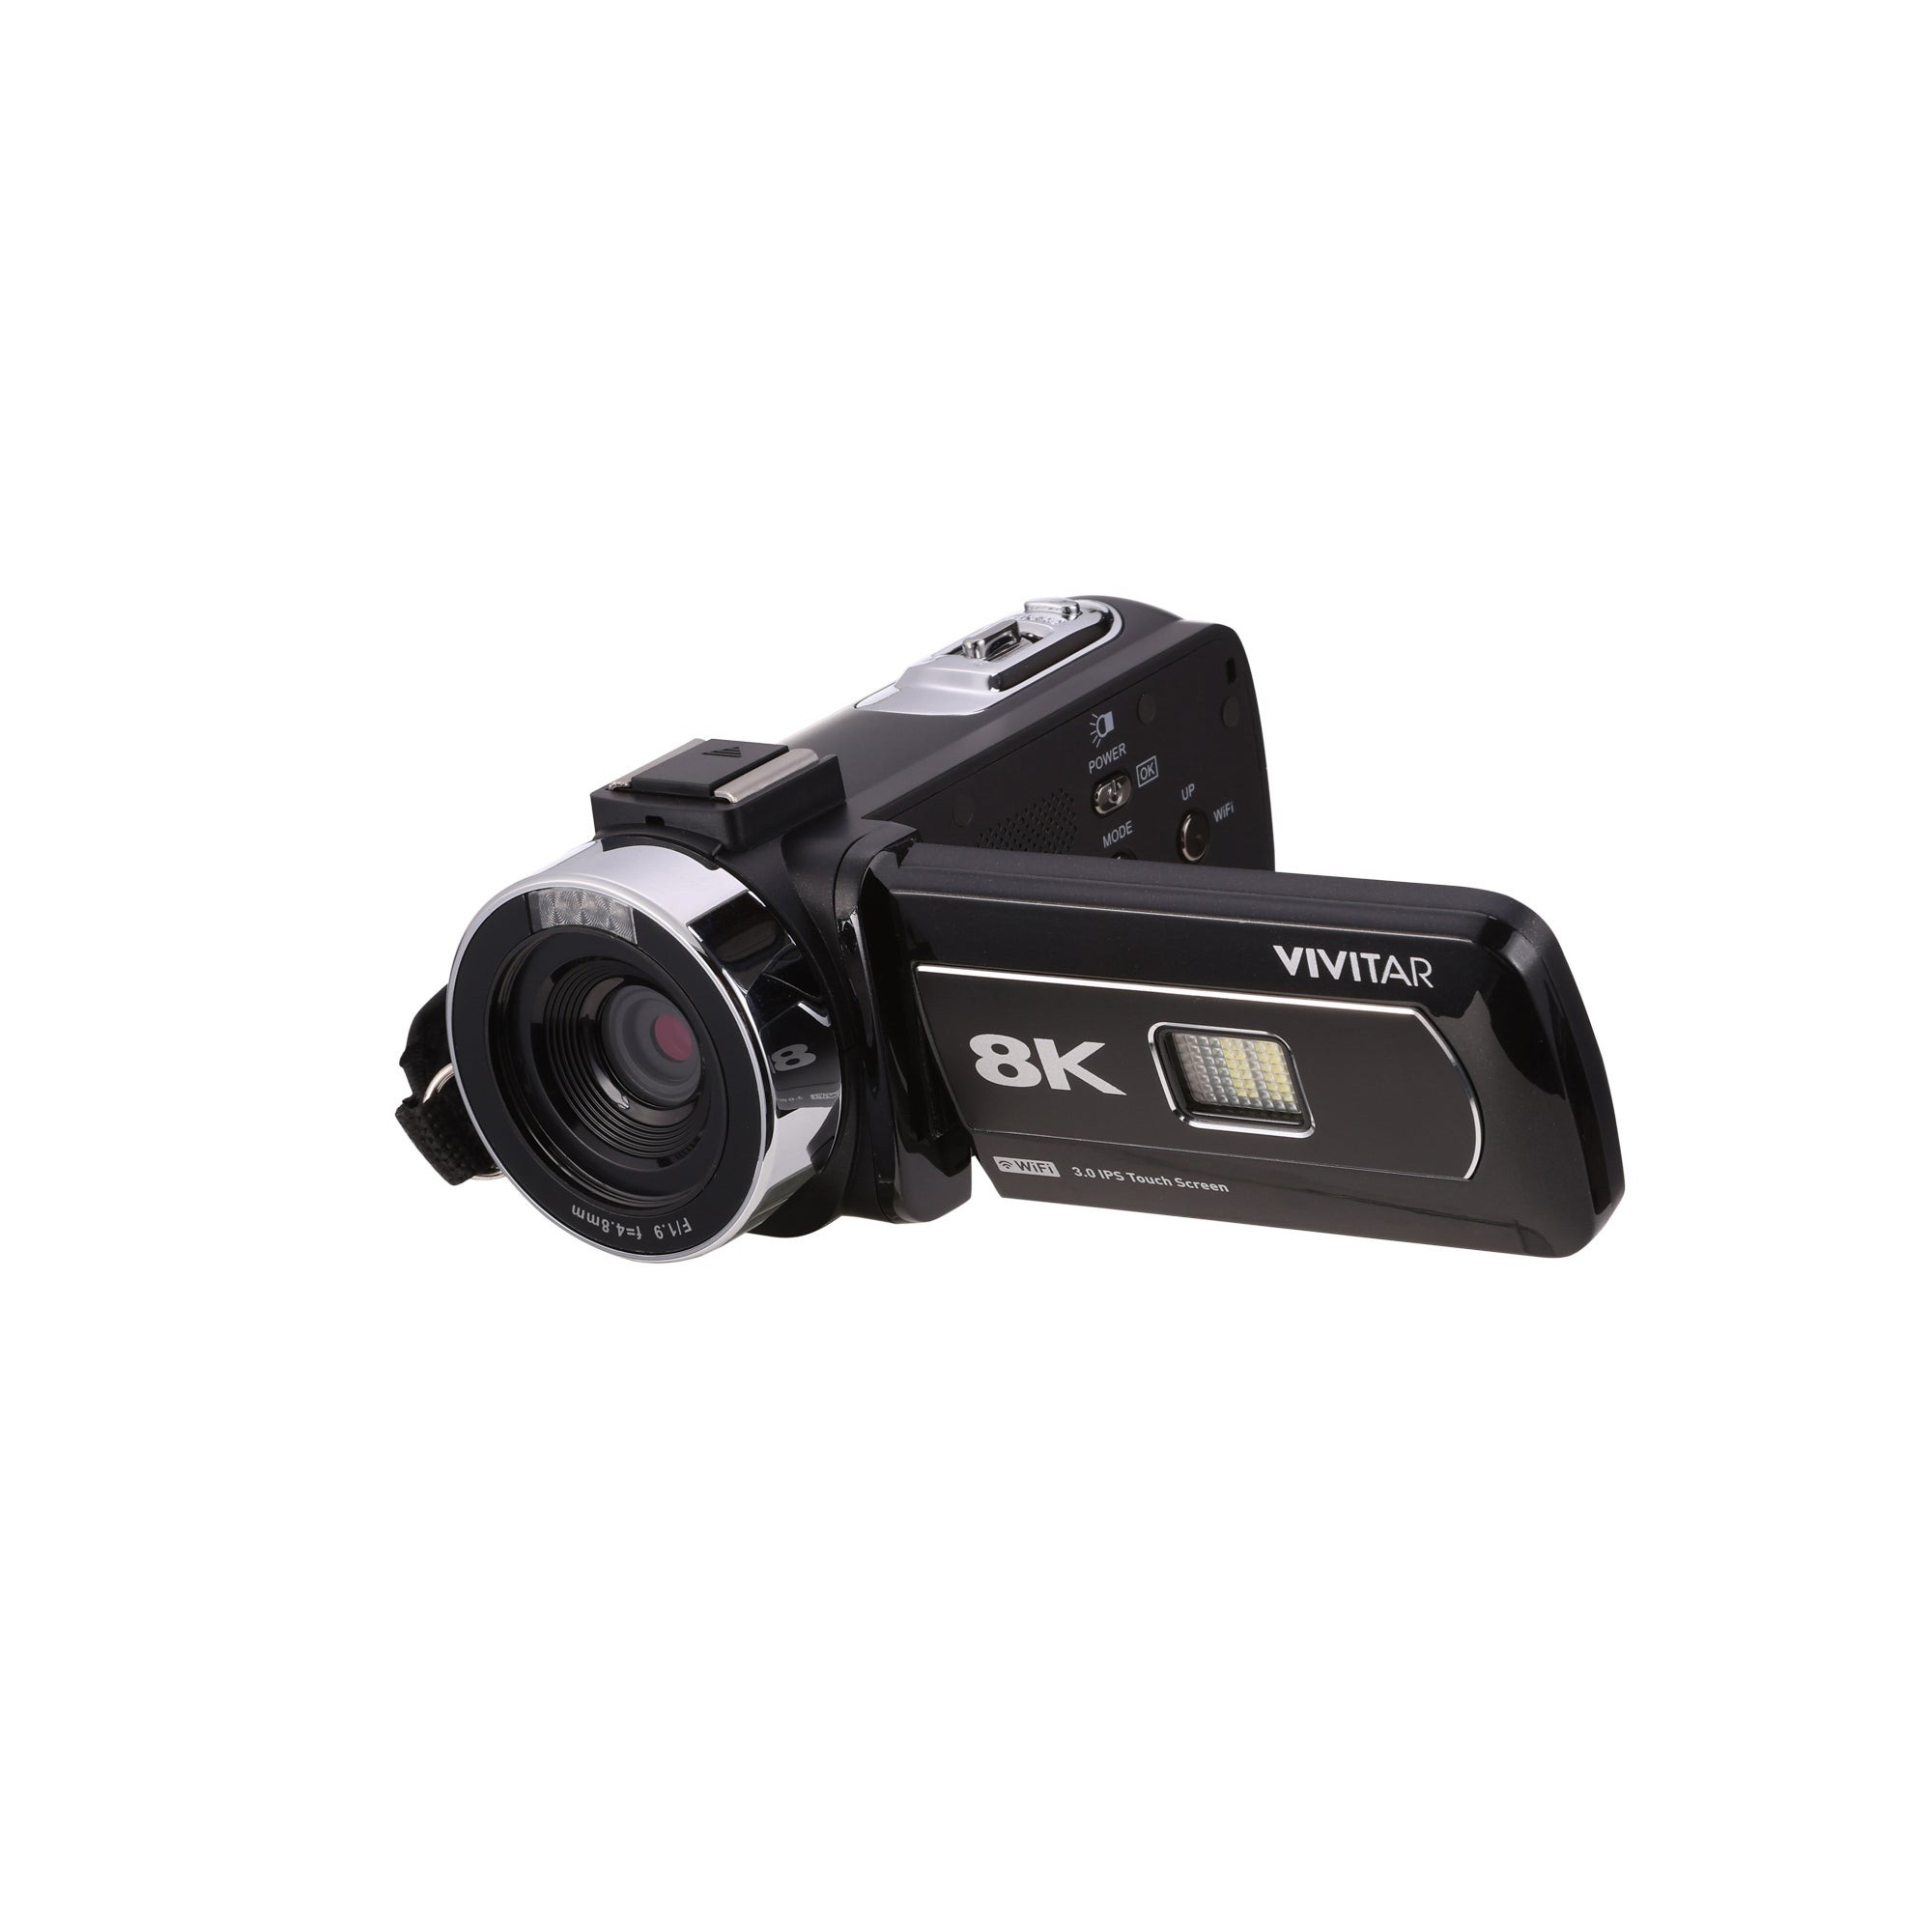 8K Pro Digital Camcorder Black